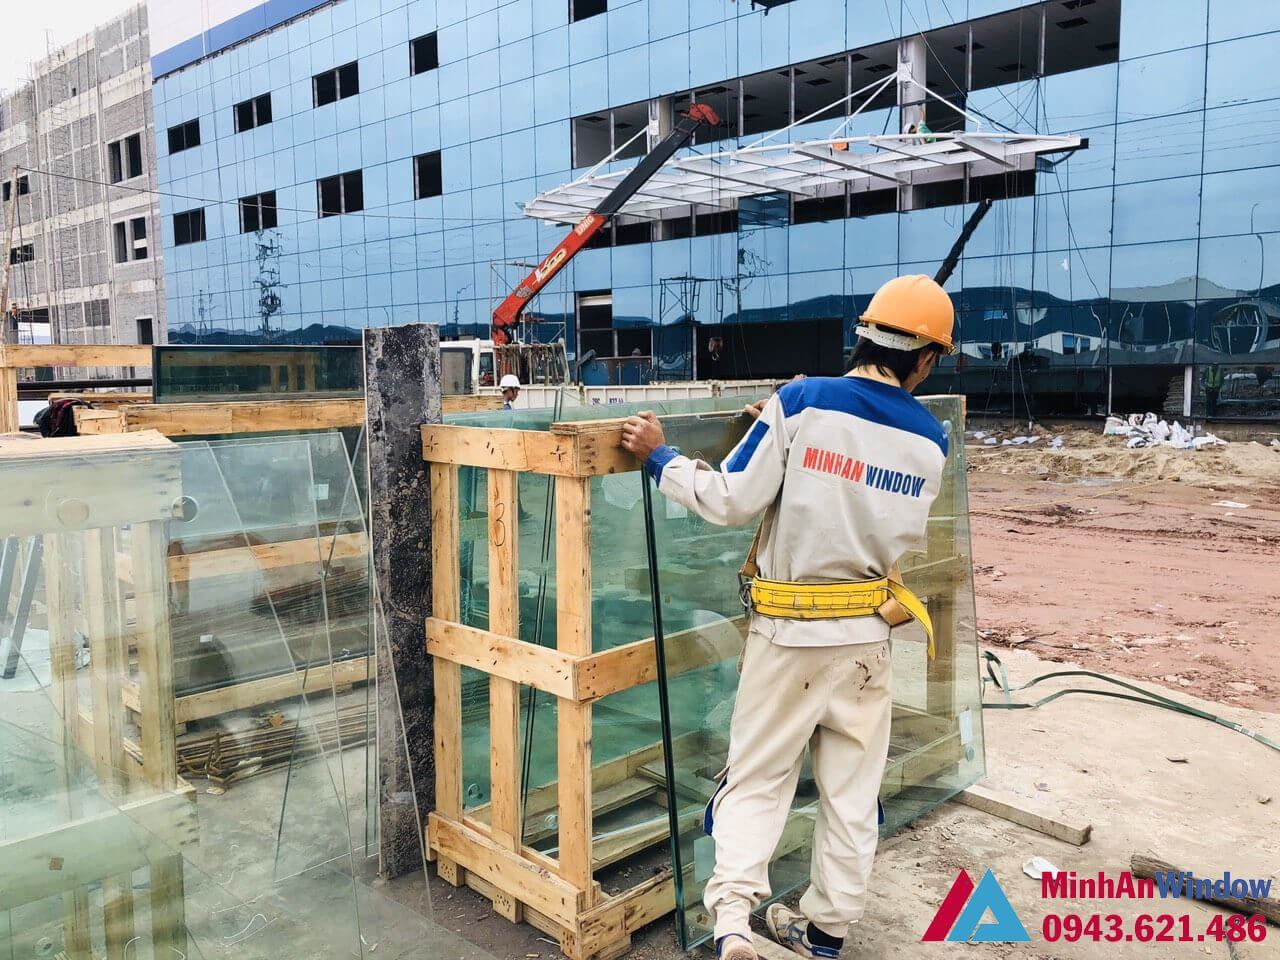 Công trình Nhà máy Sunrise KCN Vân Trung, Bắc Giang - Minh An Window đã thi công